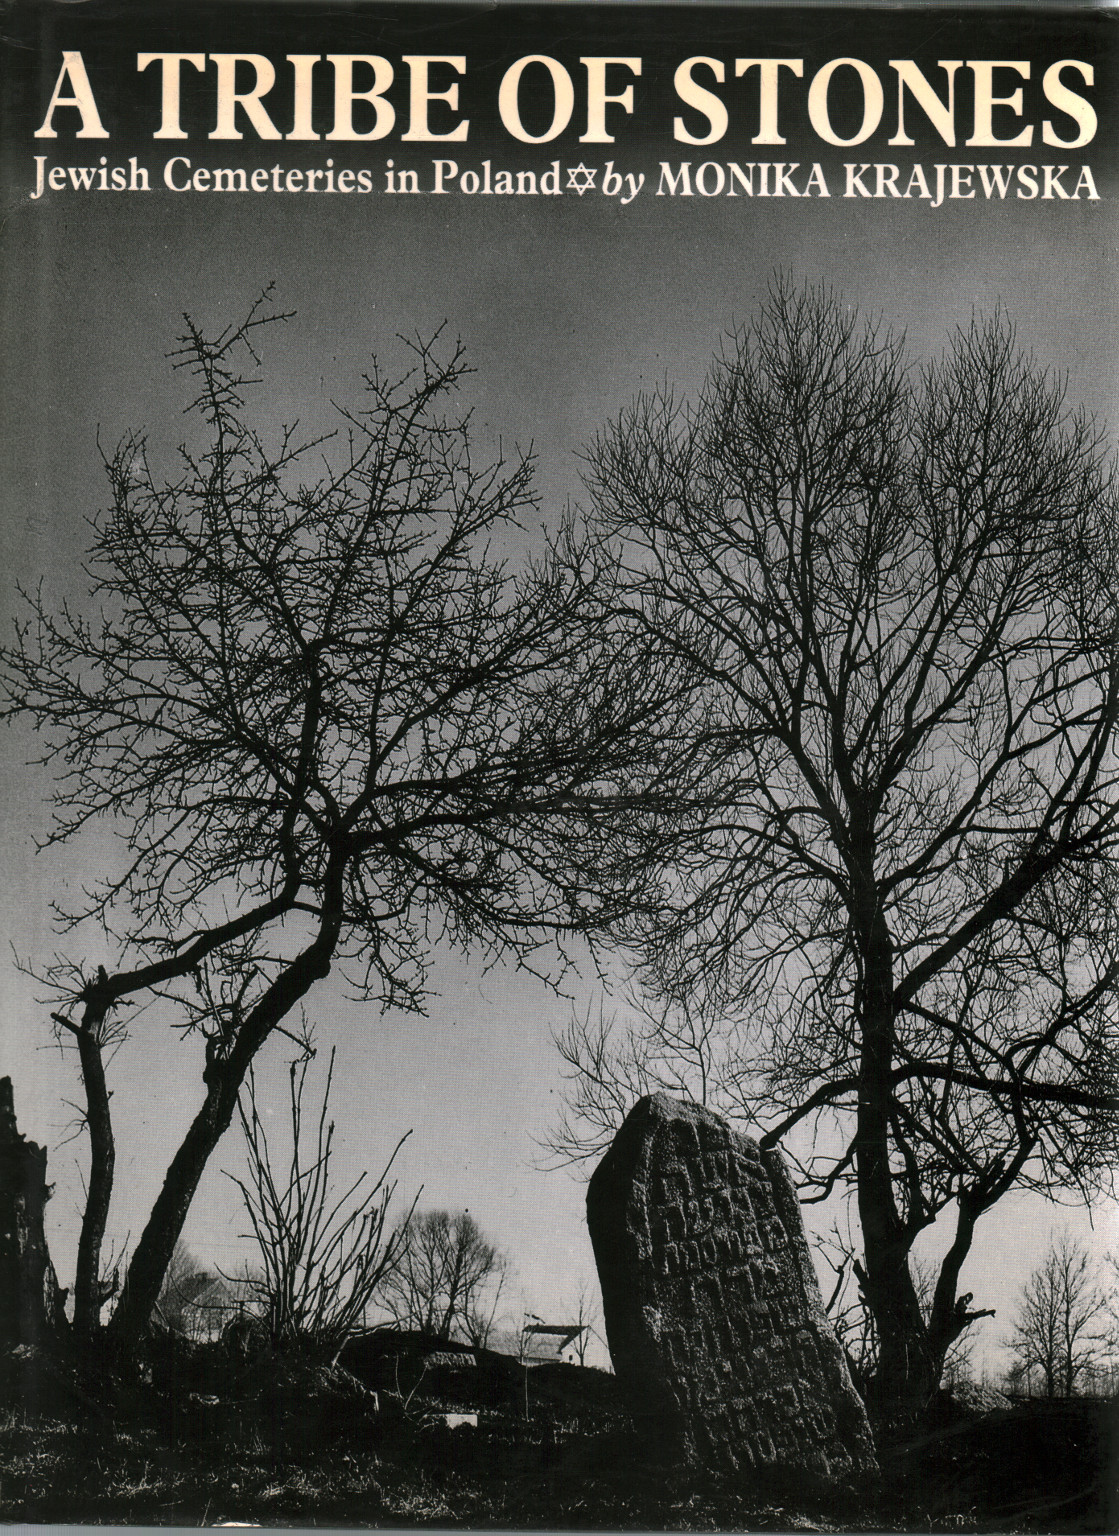 In tribue of stones jewish cemeteries in Poland, s.zu.